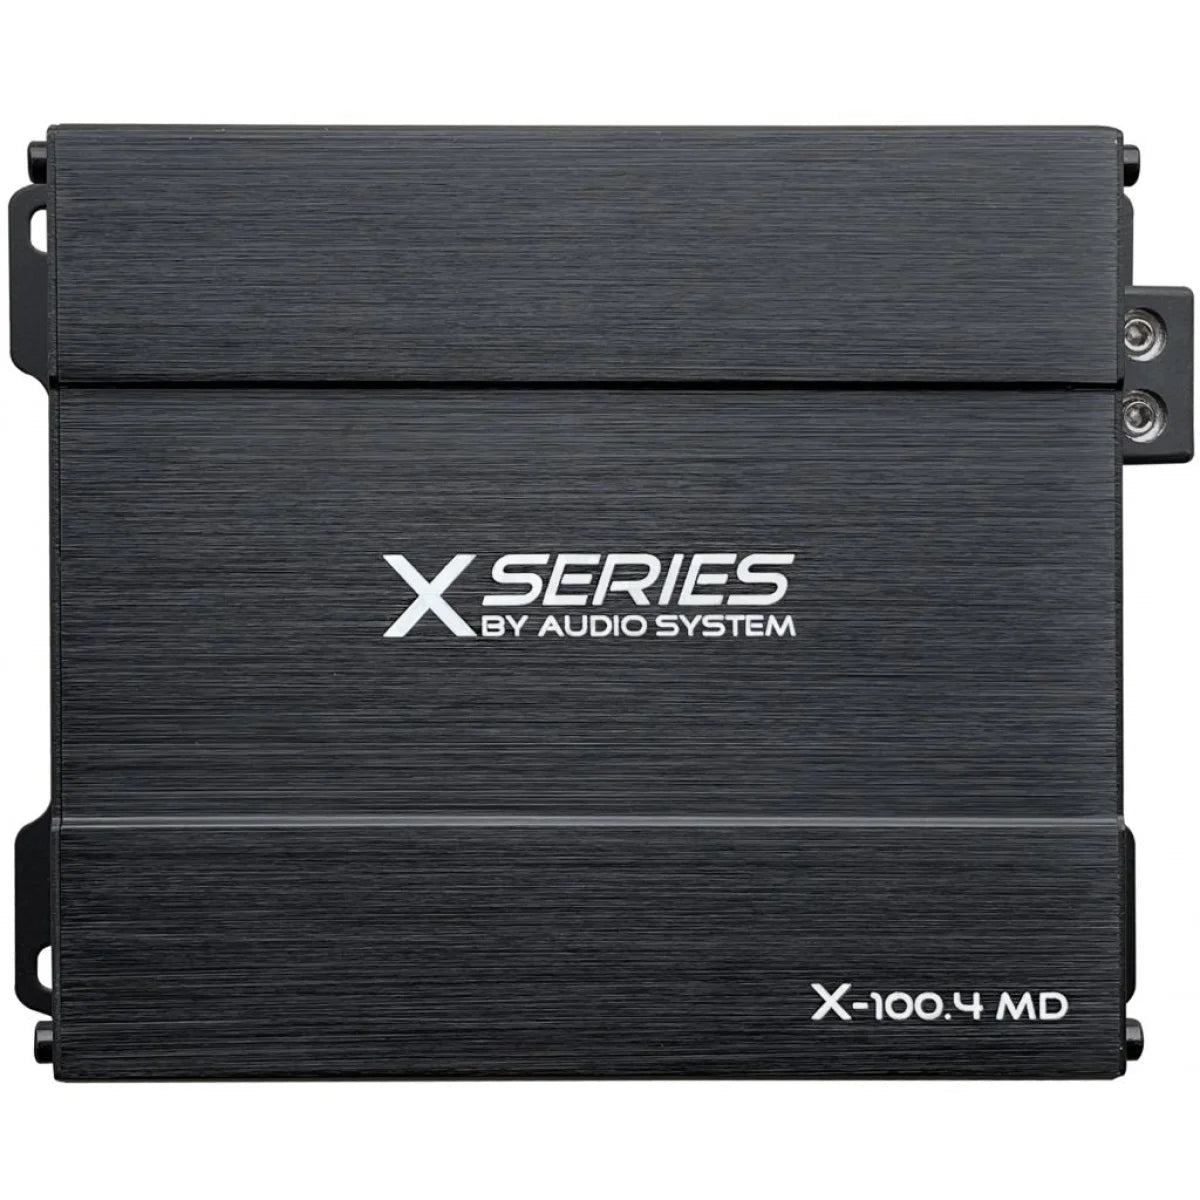 MD SYSTEM AUDIO Verstärker 4-Kanal X-100.4